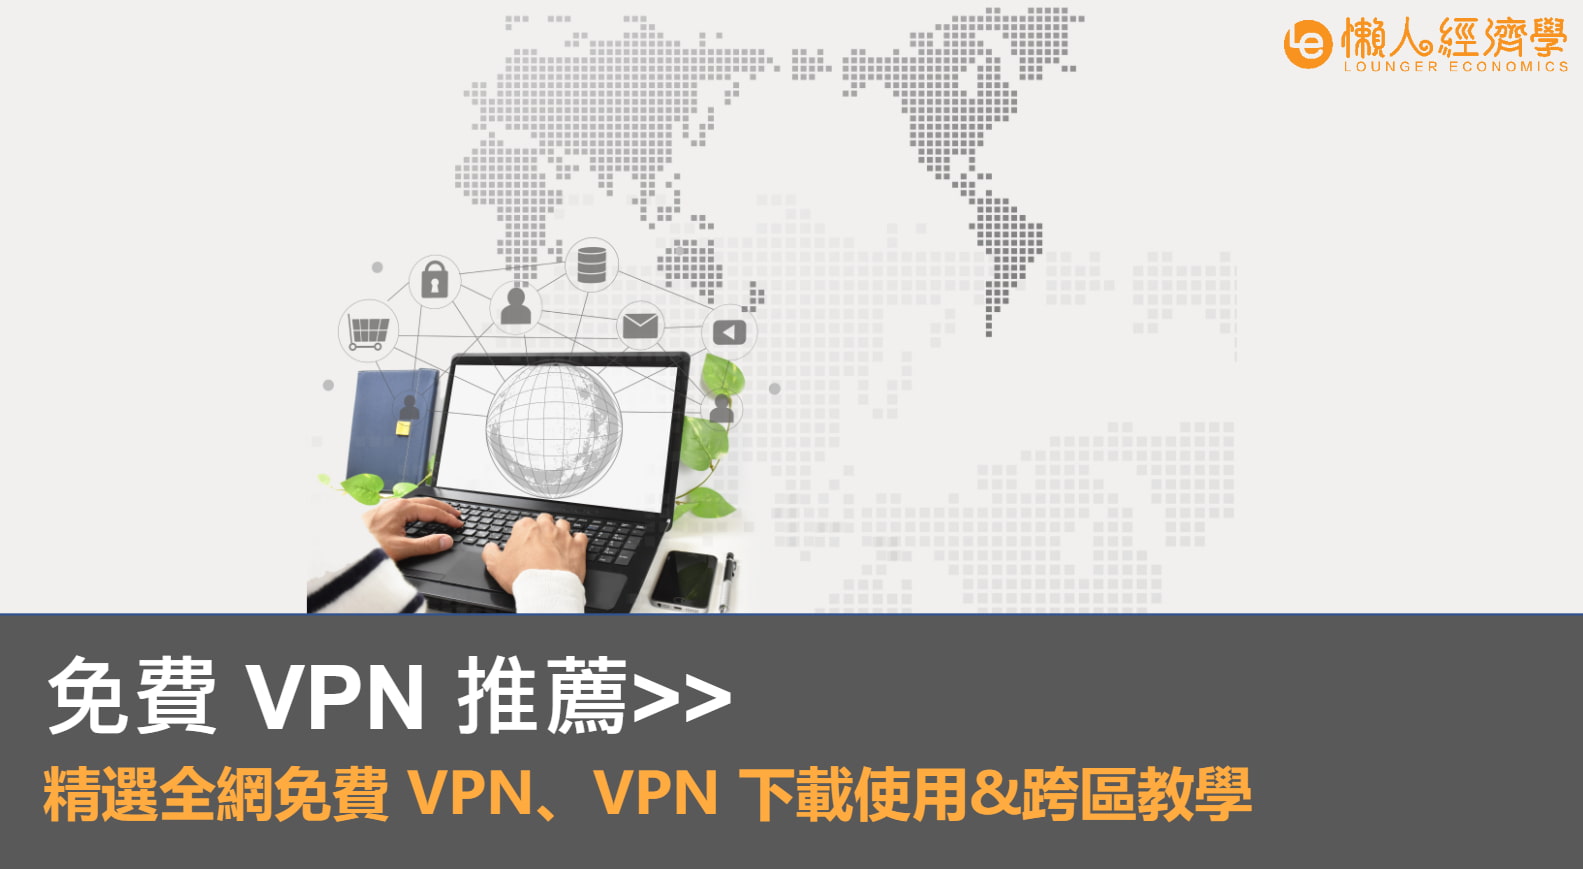 免費 VPN 軟體推薦｜精選全網免費 VPN 、VPN 下載試用、跨區觀看 Netflix 教學